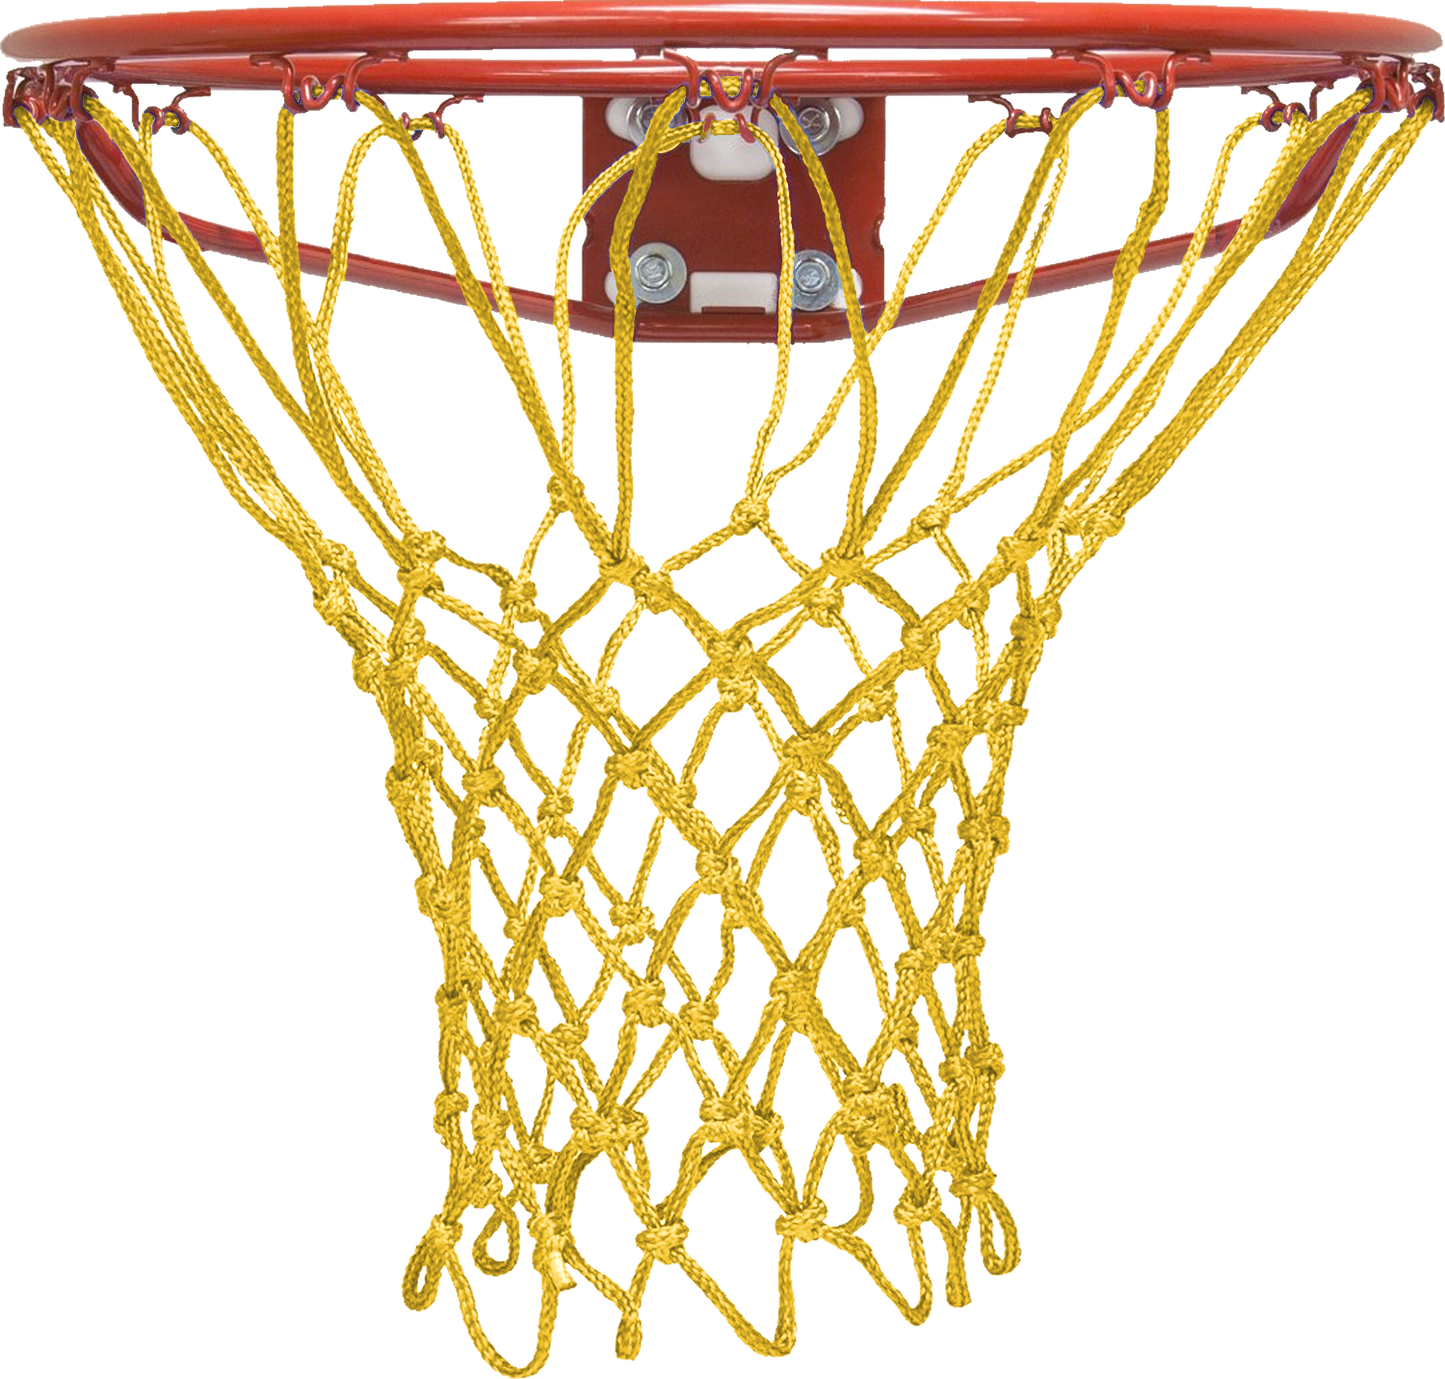 Krazy Netz Heavy Duty Gold Basketball Rim Net